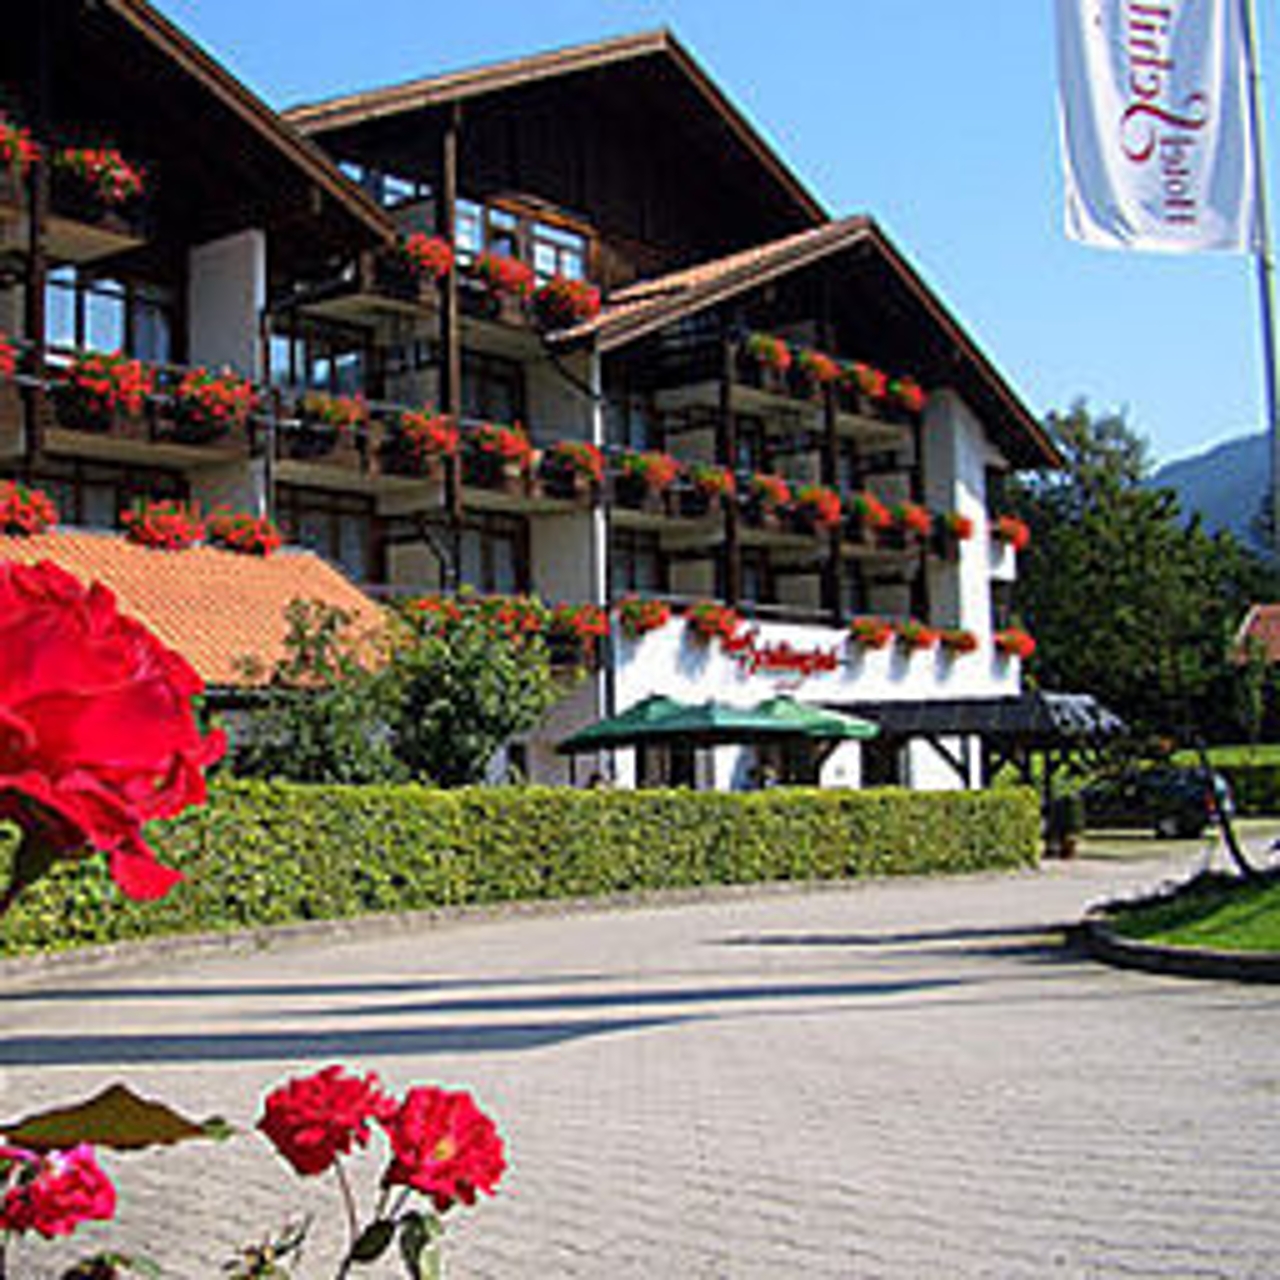 Hotel Schillingshof - 4 HRS star hotel in Bad Kohlgrub (Bavaria)